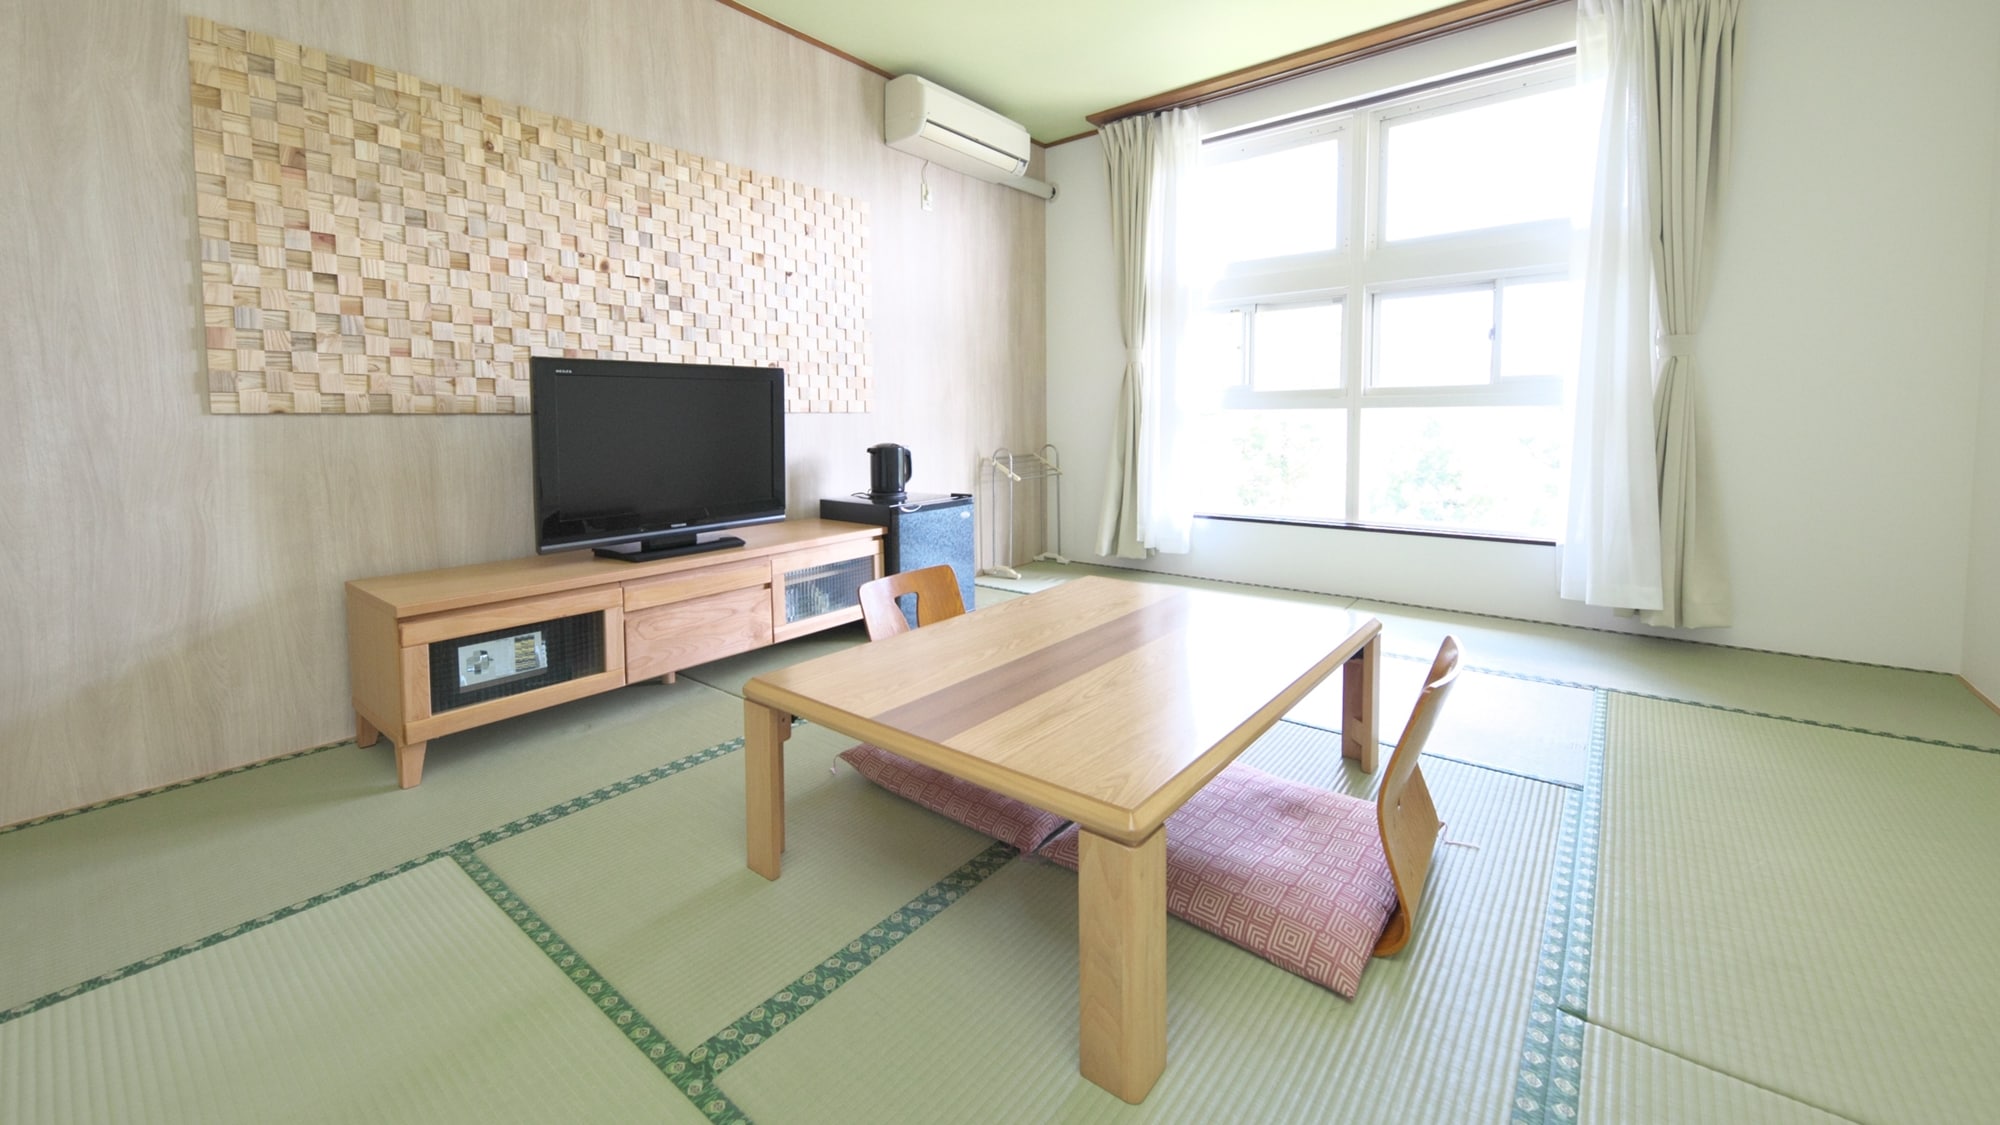 【일본식 방】8~10 다다미(조망을 신경쓰지 않는 방향) 청결감이 있는 일본식 방.